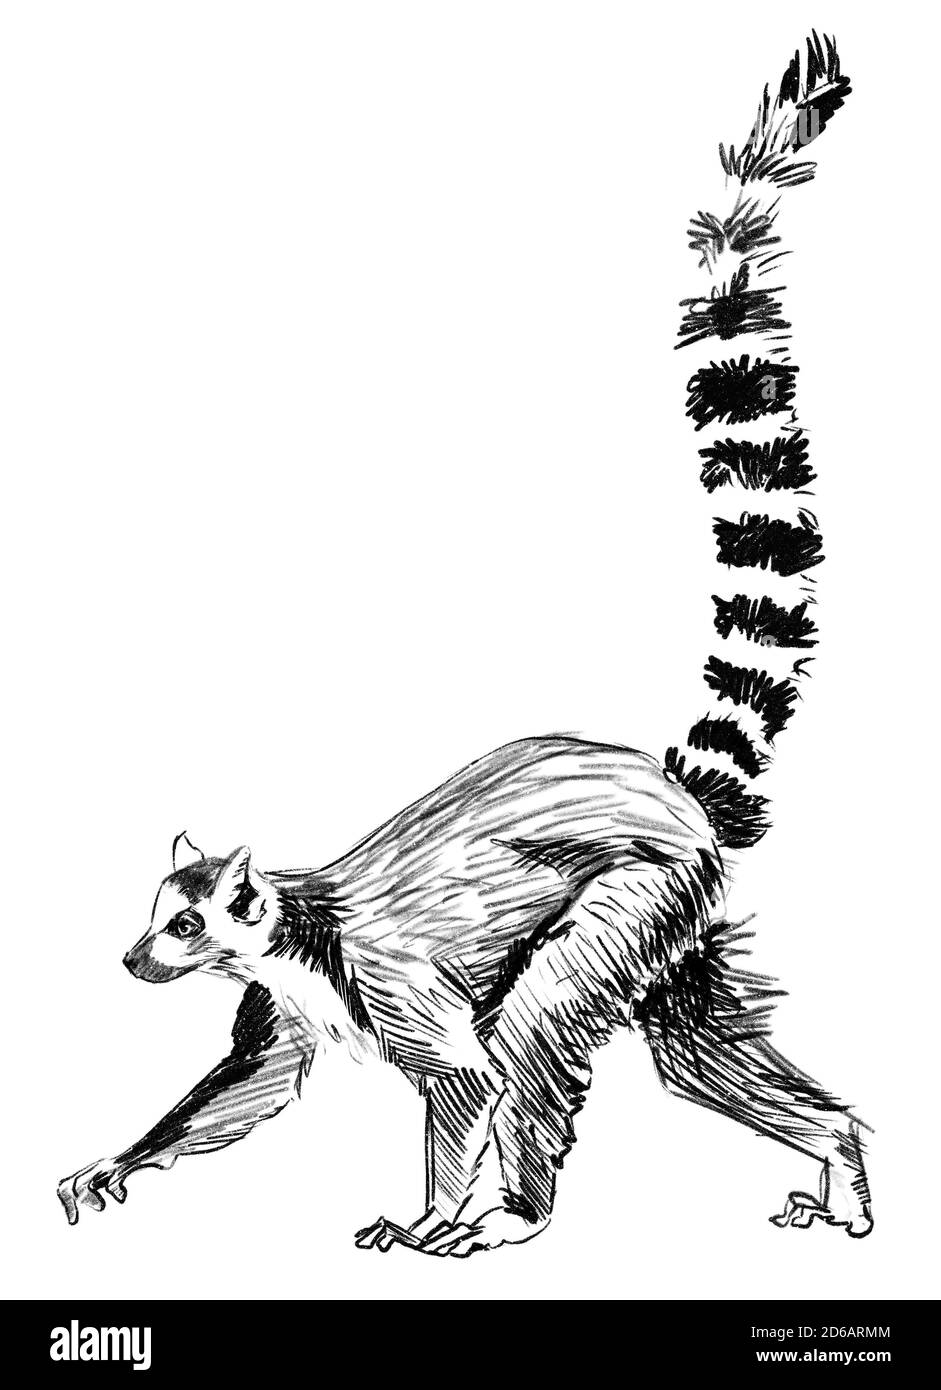 Esquisse Lemur, madagascar. Illustration crayon dessinée à la main Banque D'Images